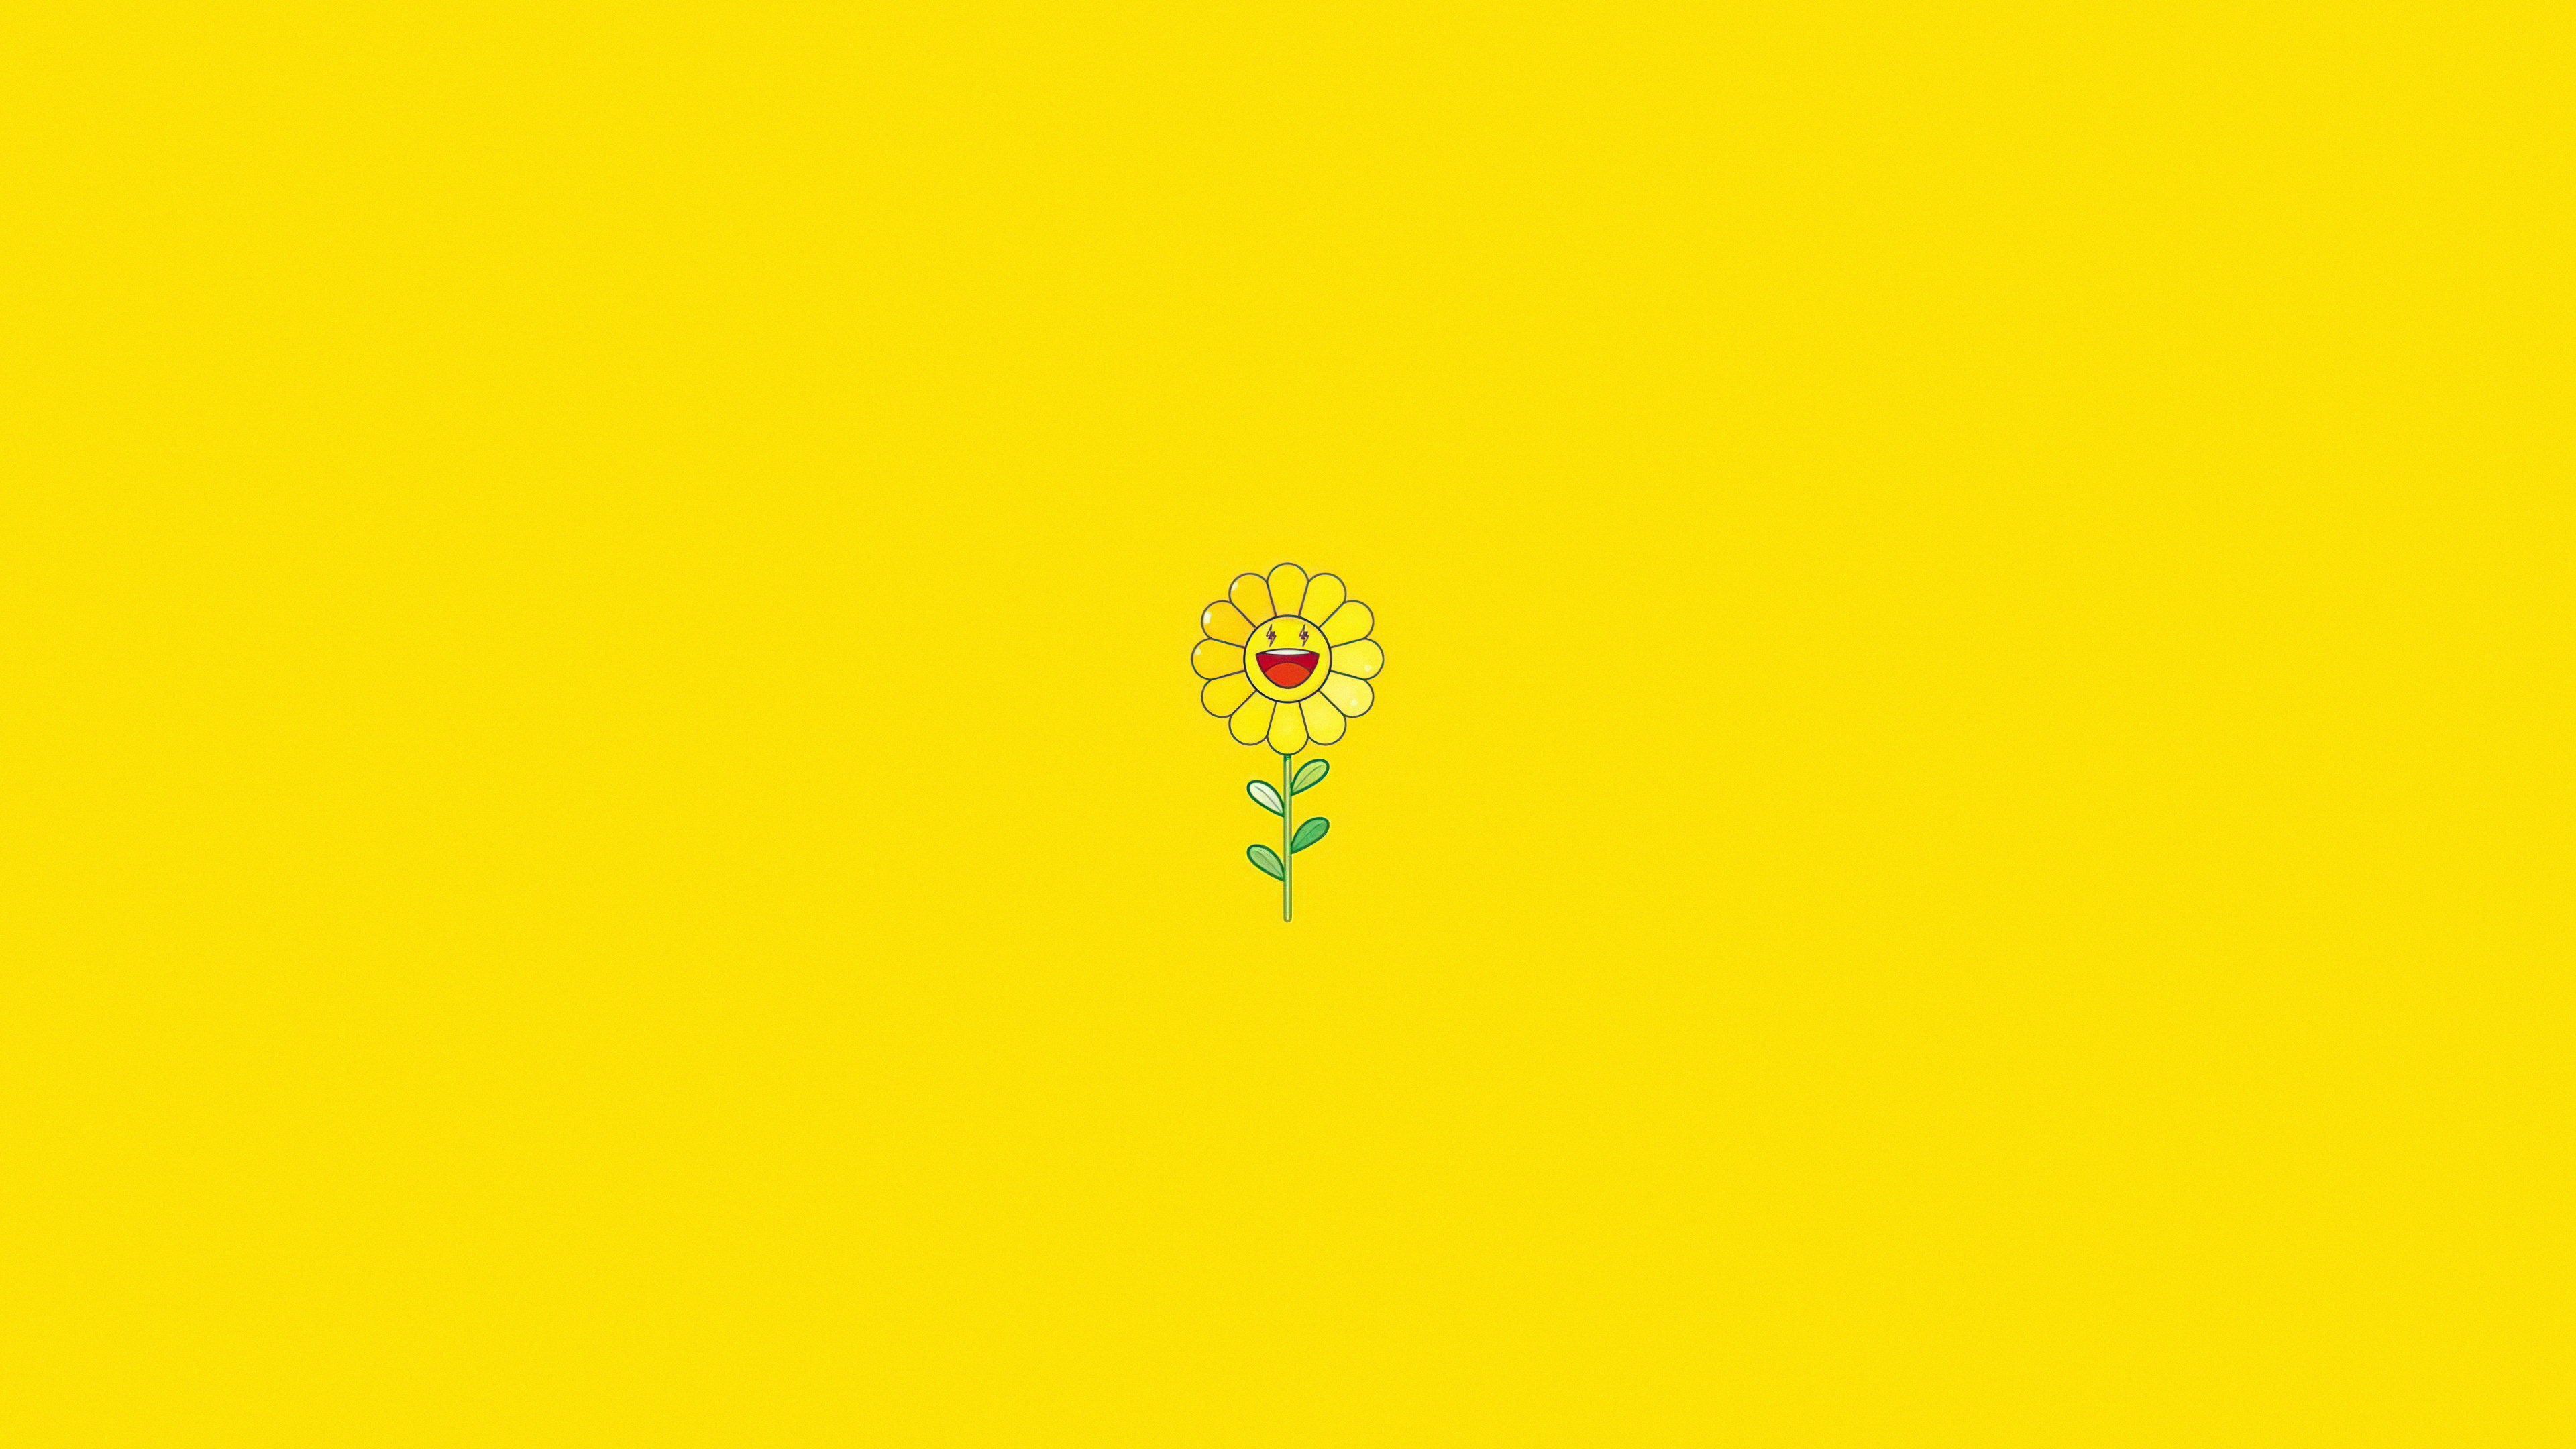 Hình nền máy tính hoa hướng dương màu vàng sẽ giúp bạn cảm nhận được nét đẹp của cái tôi và sức sống mãnh liệt của hoa hướng dương. Độ phân giải Full HD 1080P và 4K sẽ giúp hình ảnh trở nên sống động, gần gũi hơn bao giờ hết. Hãy tham gia và cùng tận hưởng nhé!